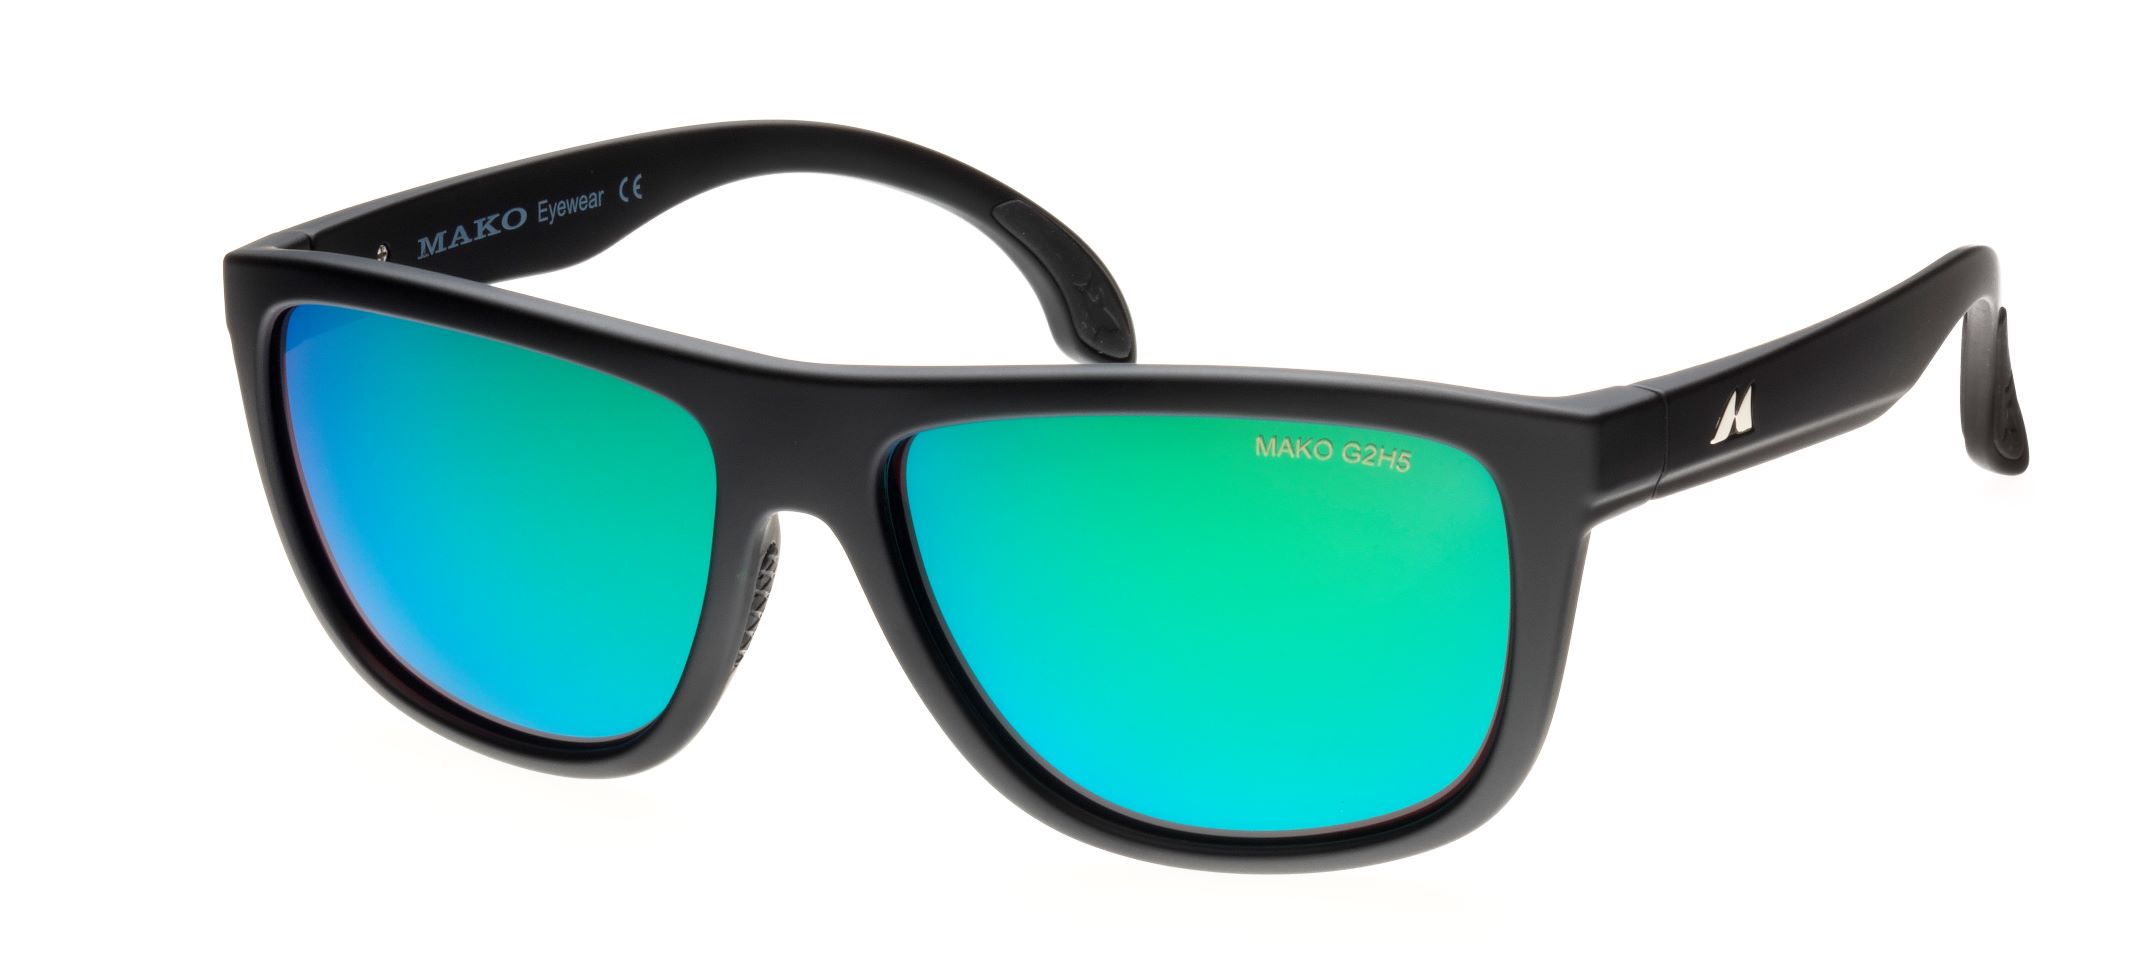 G2H5 Rose Base/Green Mirror - Mako Eyewear polarised sunglasses